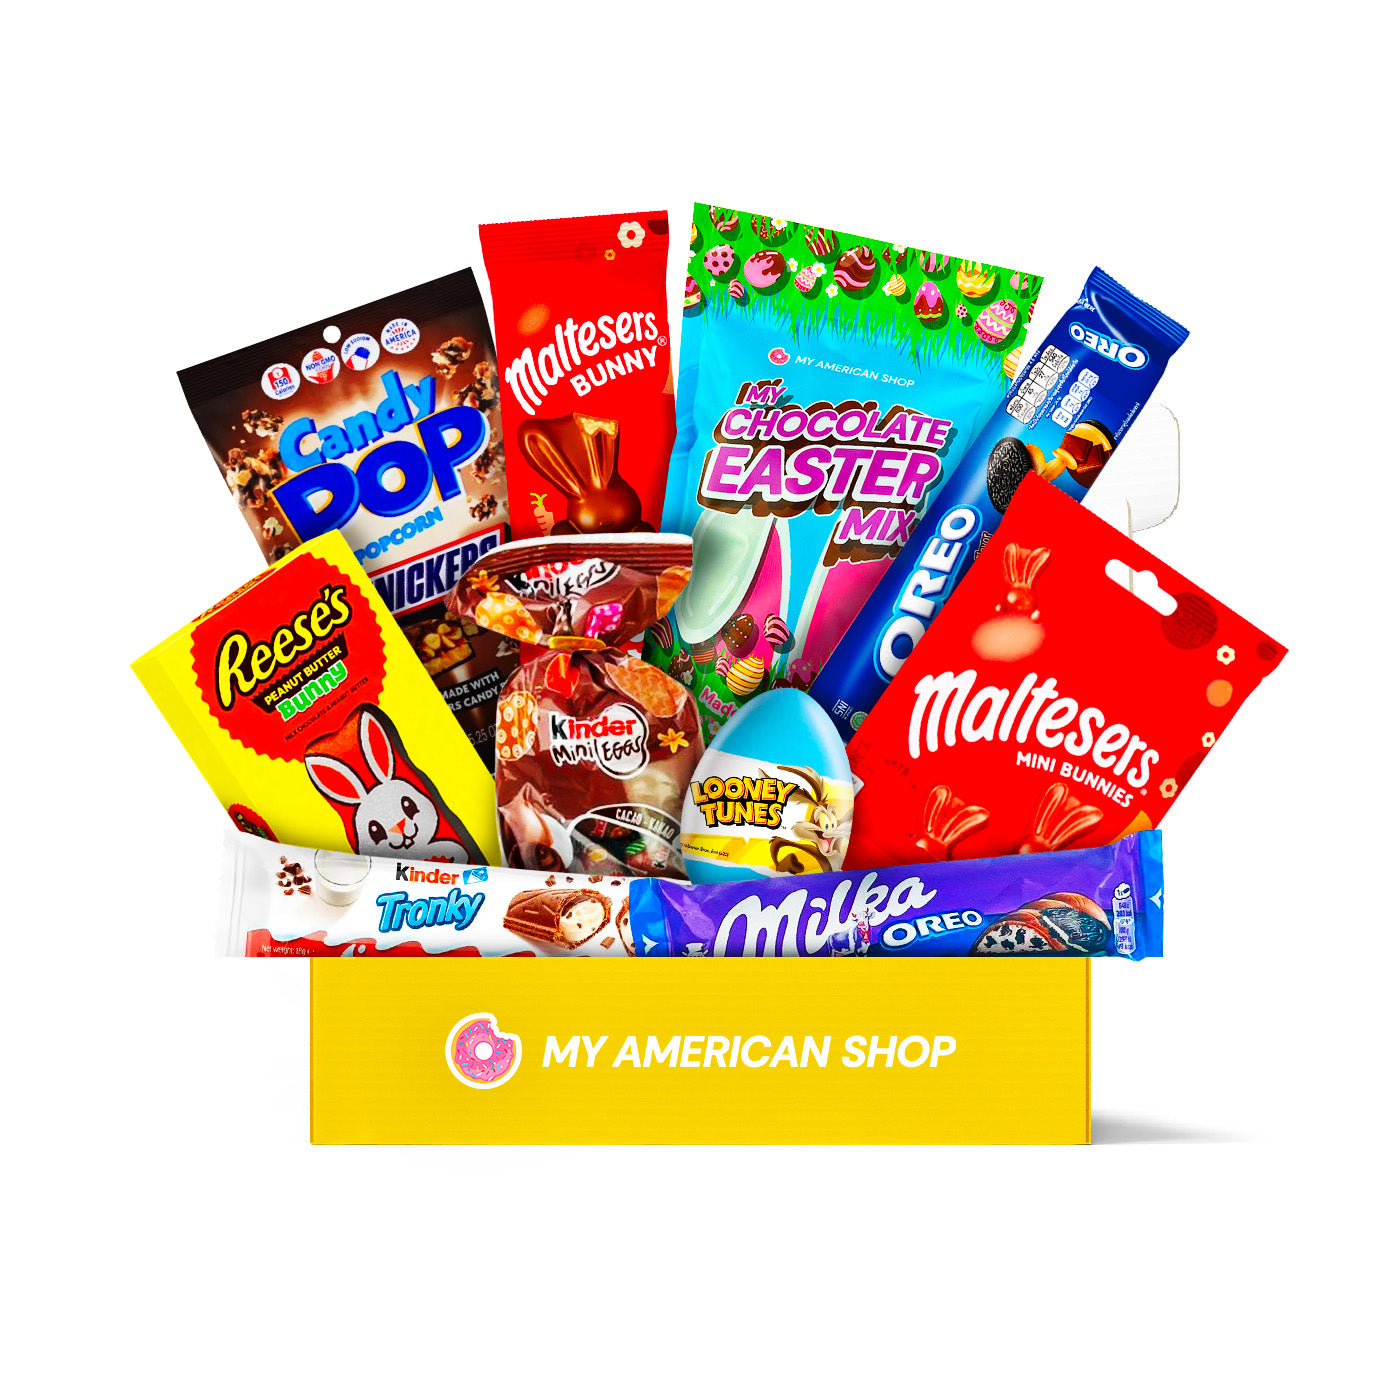 Un carton rectangulaire jaune sur fond blanc avec des produits tels que Kinder, Looney Tunes, Reese’s, Candy Pop, Maltesers. Le tout sur fond blanc